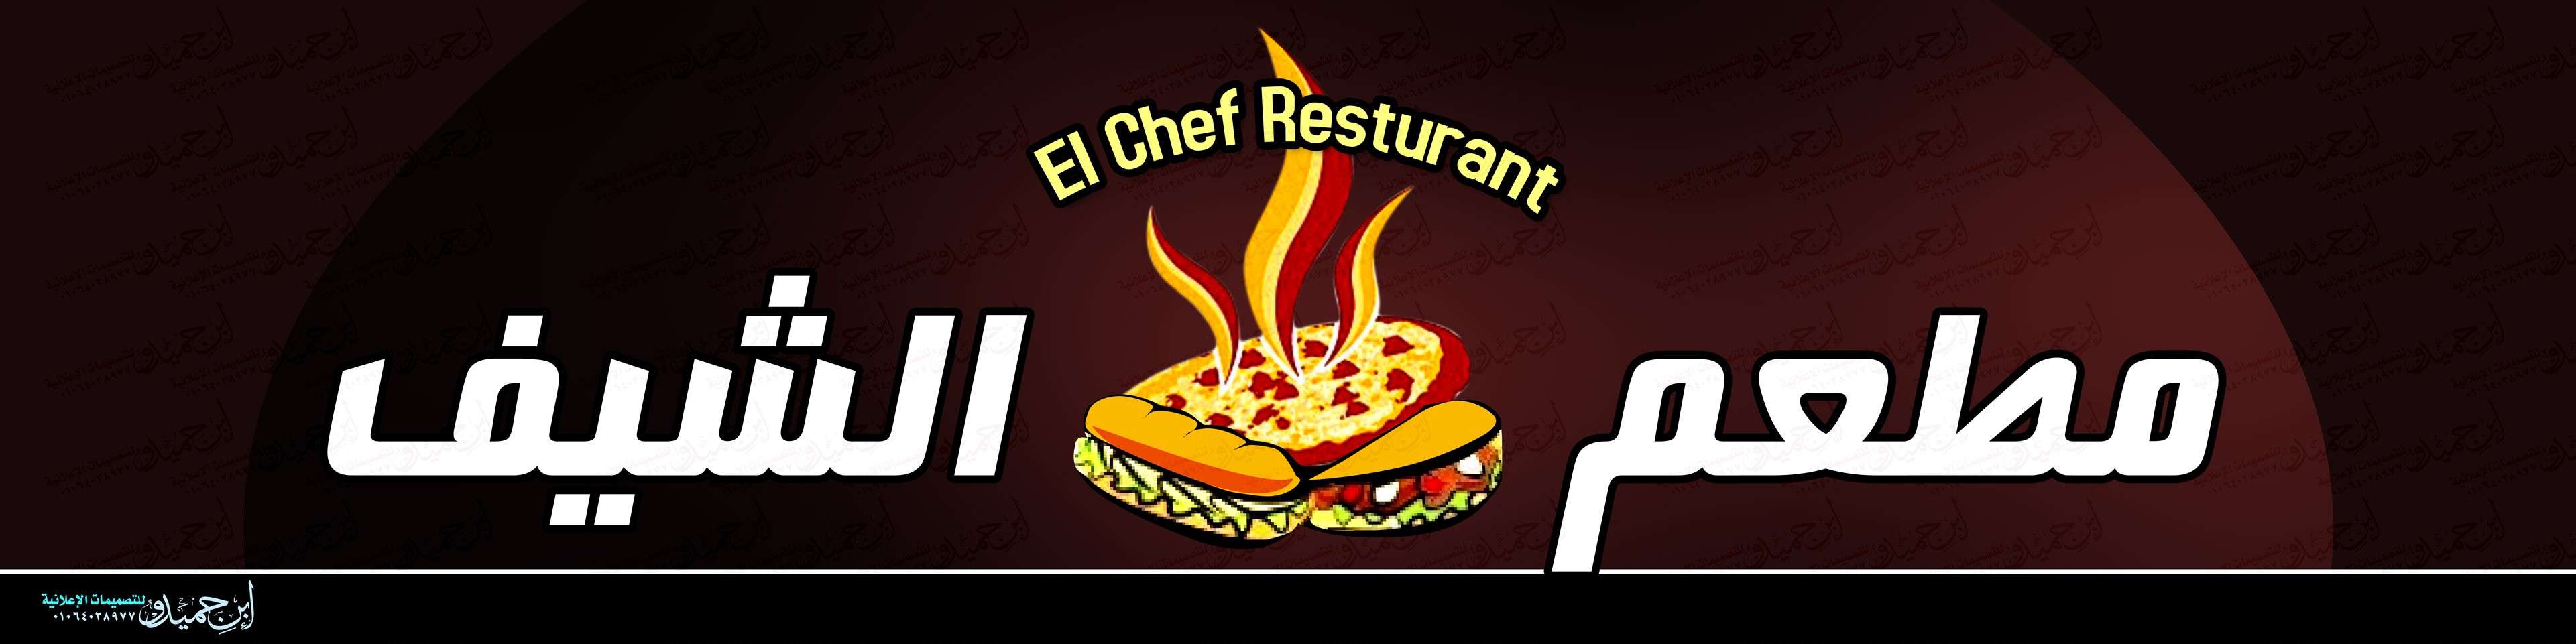 تصميم مطعم الشيف - el chef  restaurant - ابن حميدو لتصميمات الفوتوشوب 300_1010